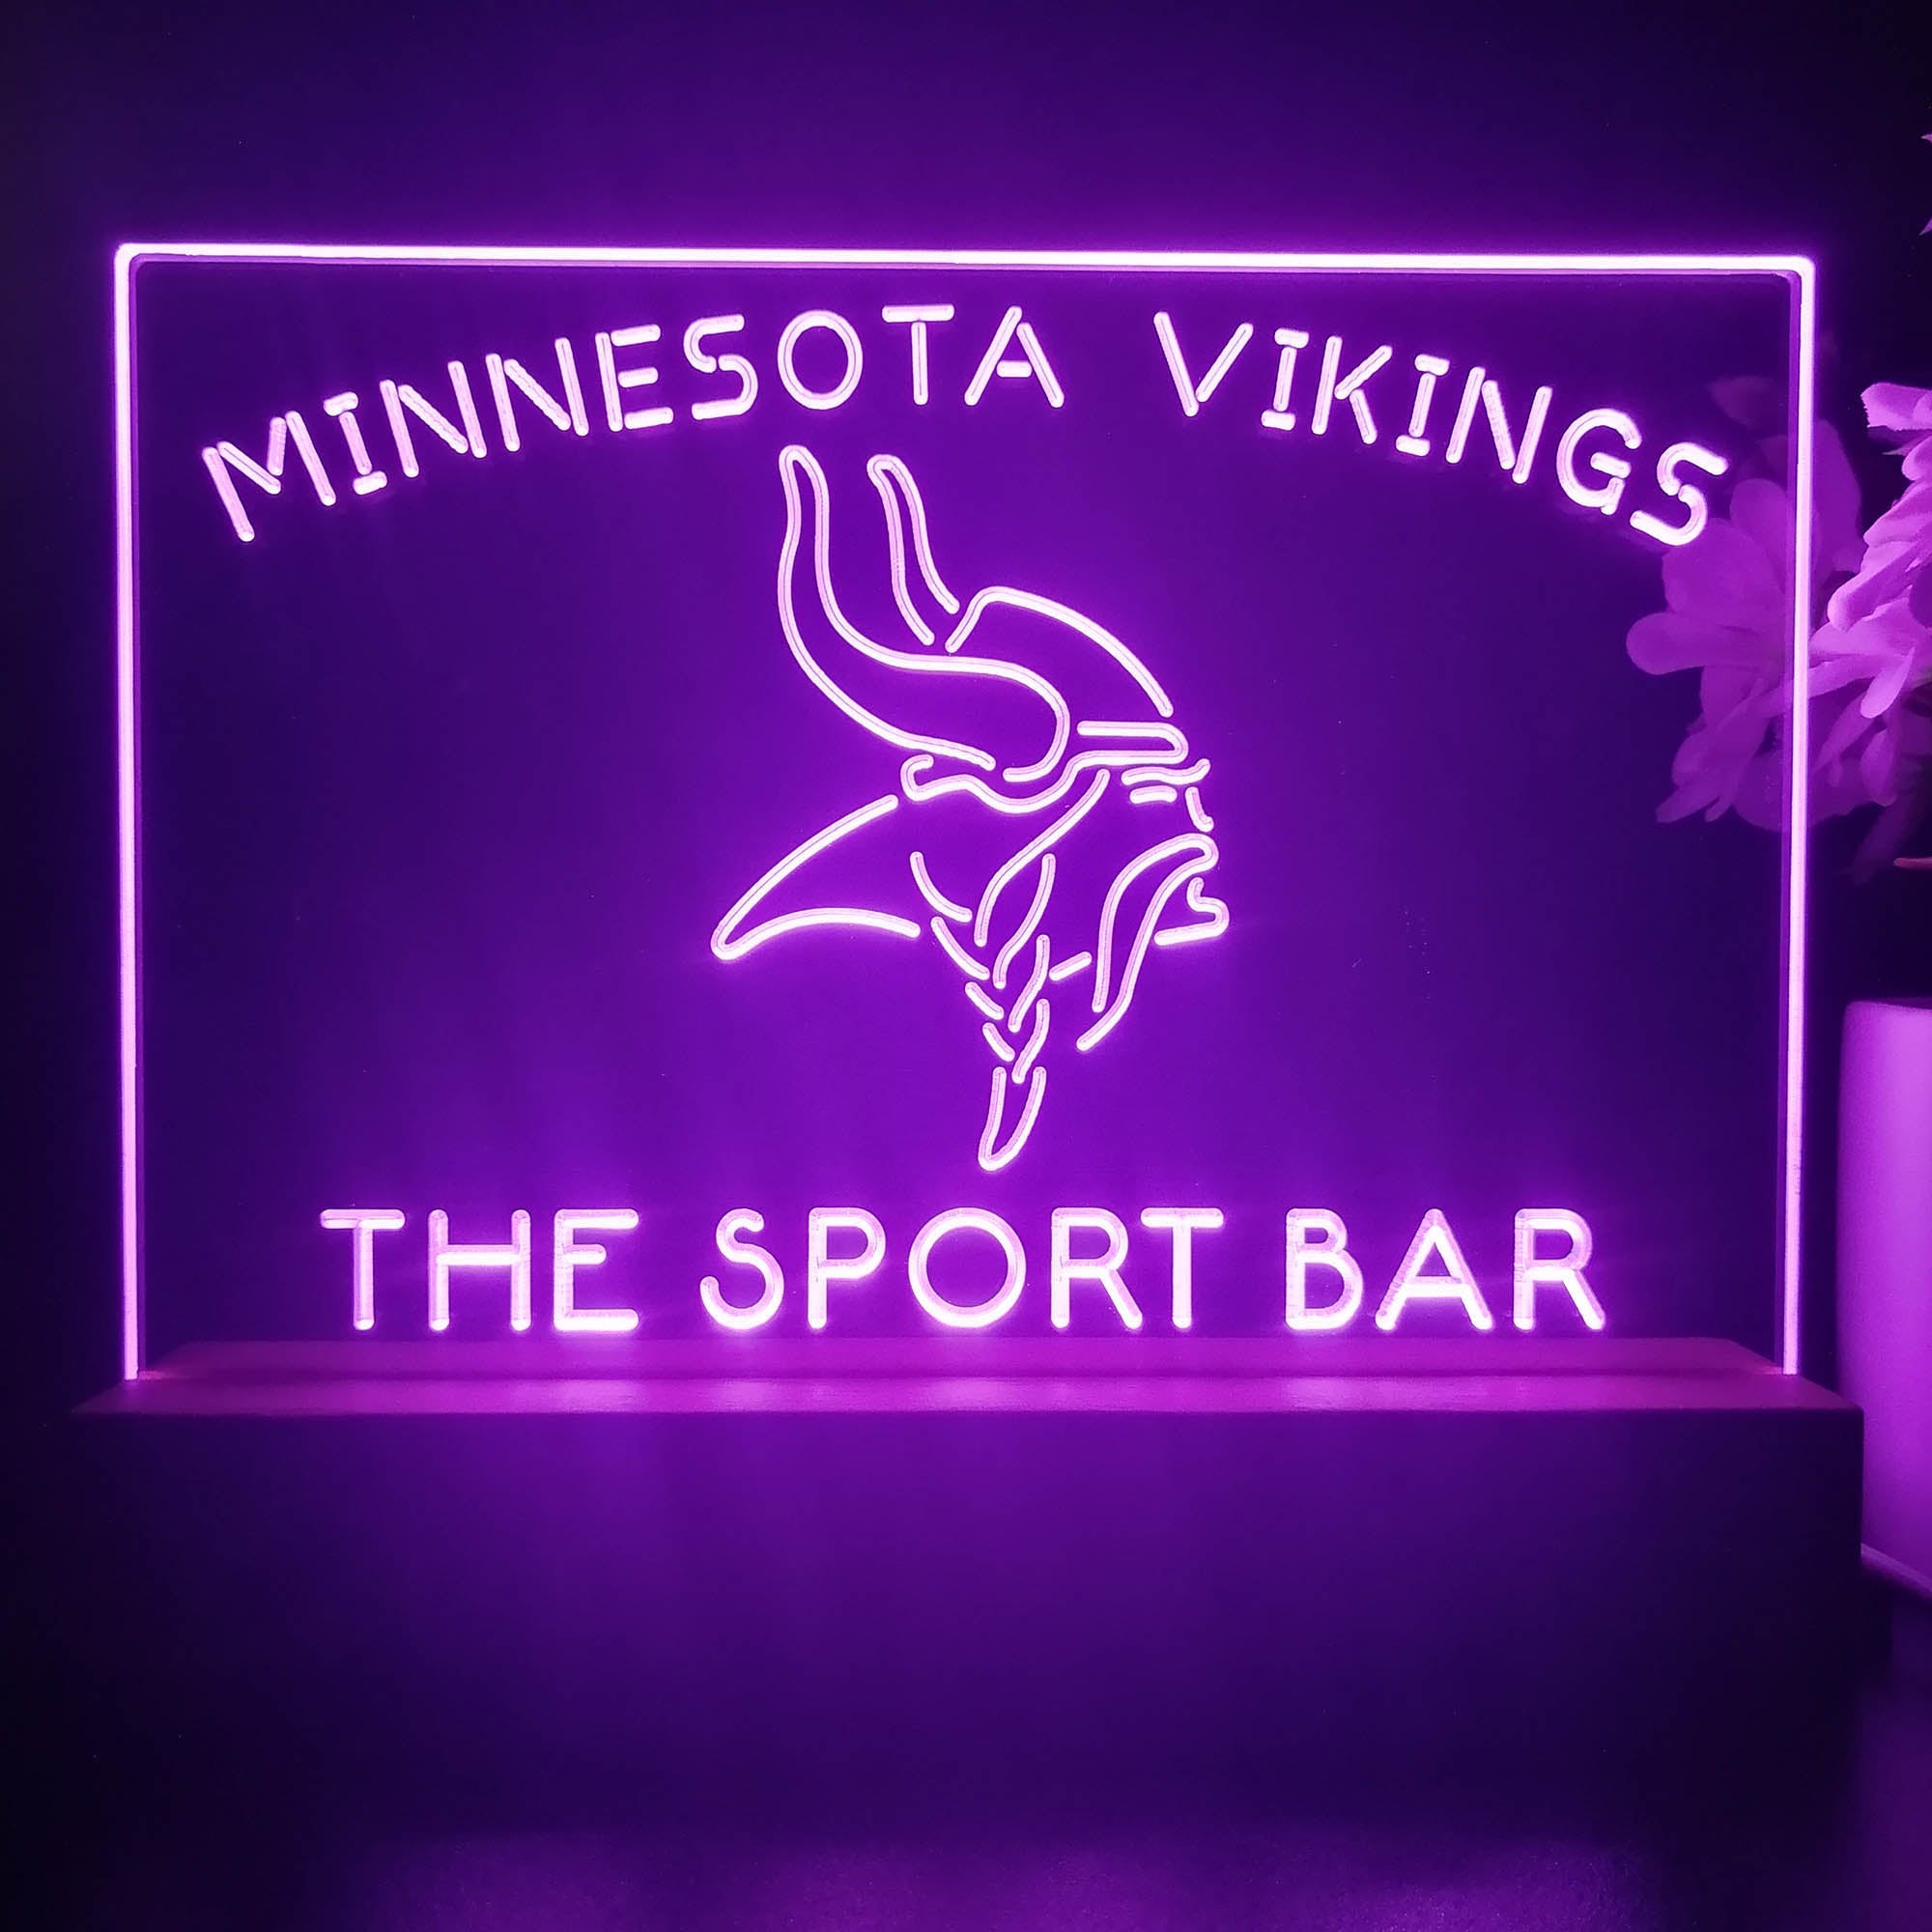 Personalized Minnesota Vikings Souvenir Neon LED Night Light Sign